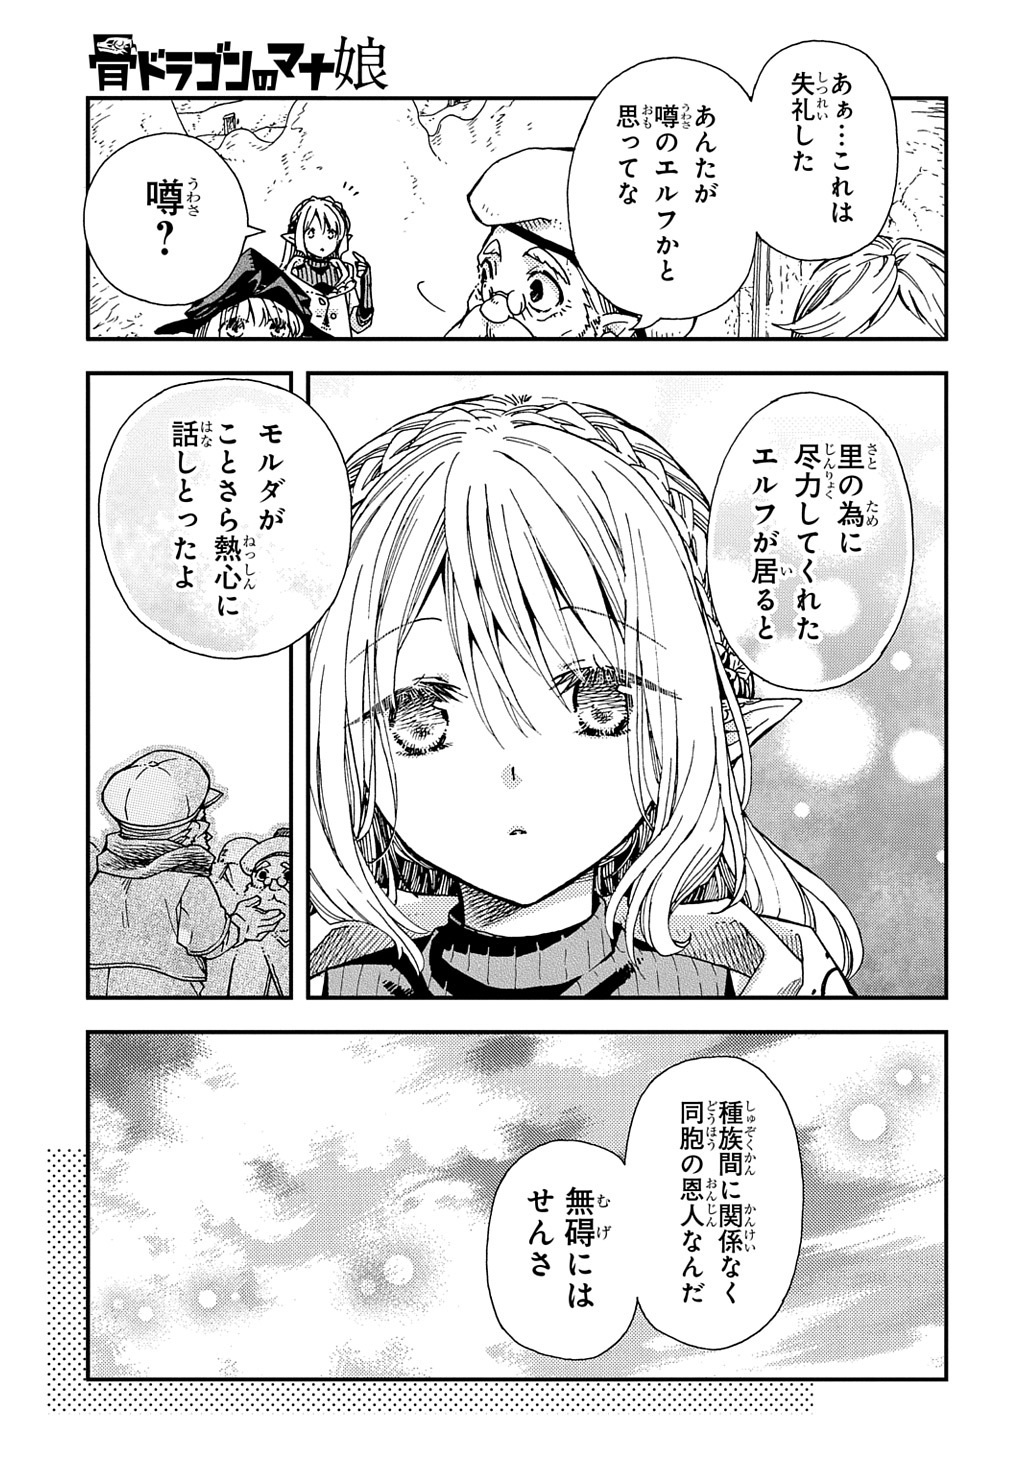 Hone Dragon no Mana Musume - Chapter 29 - Page 3